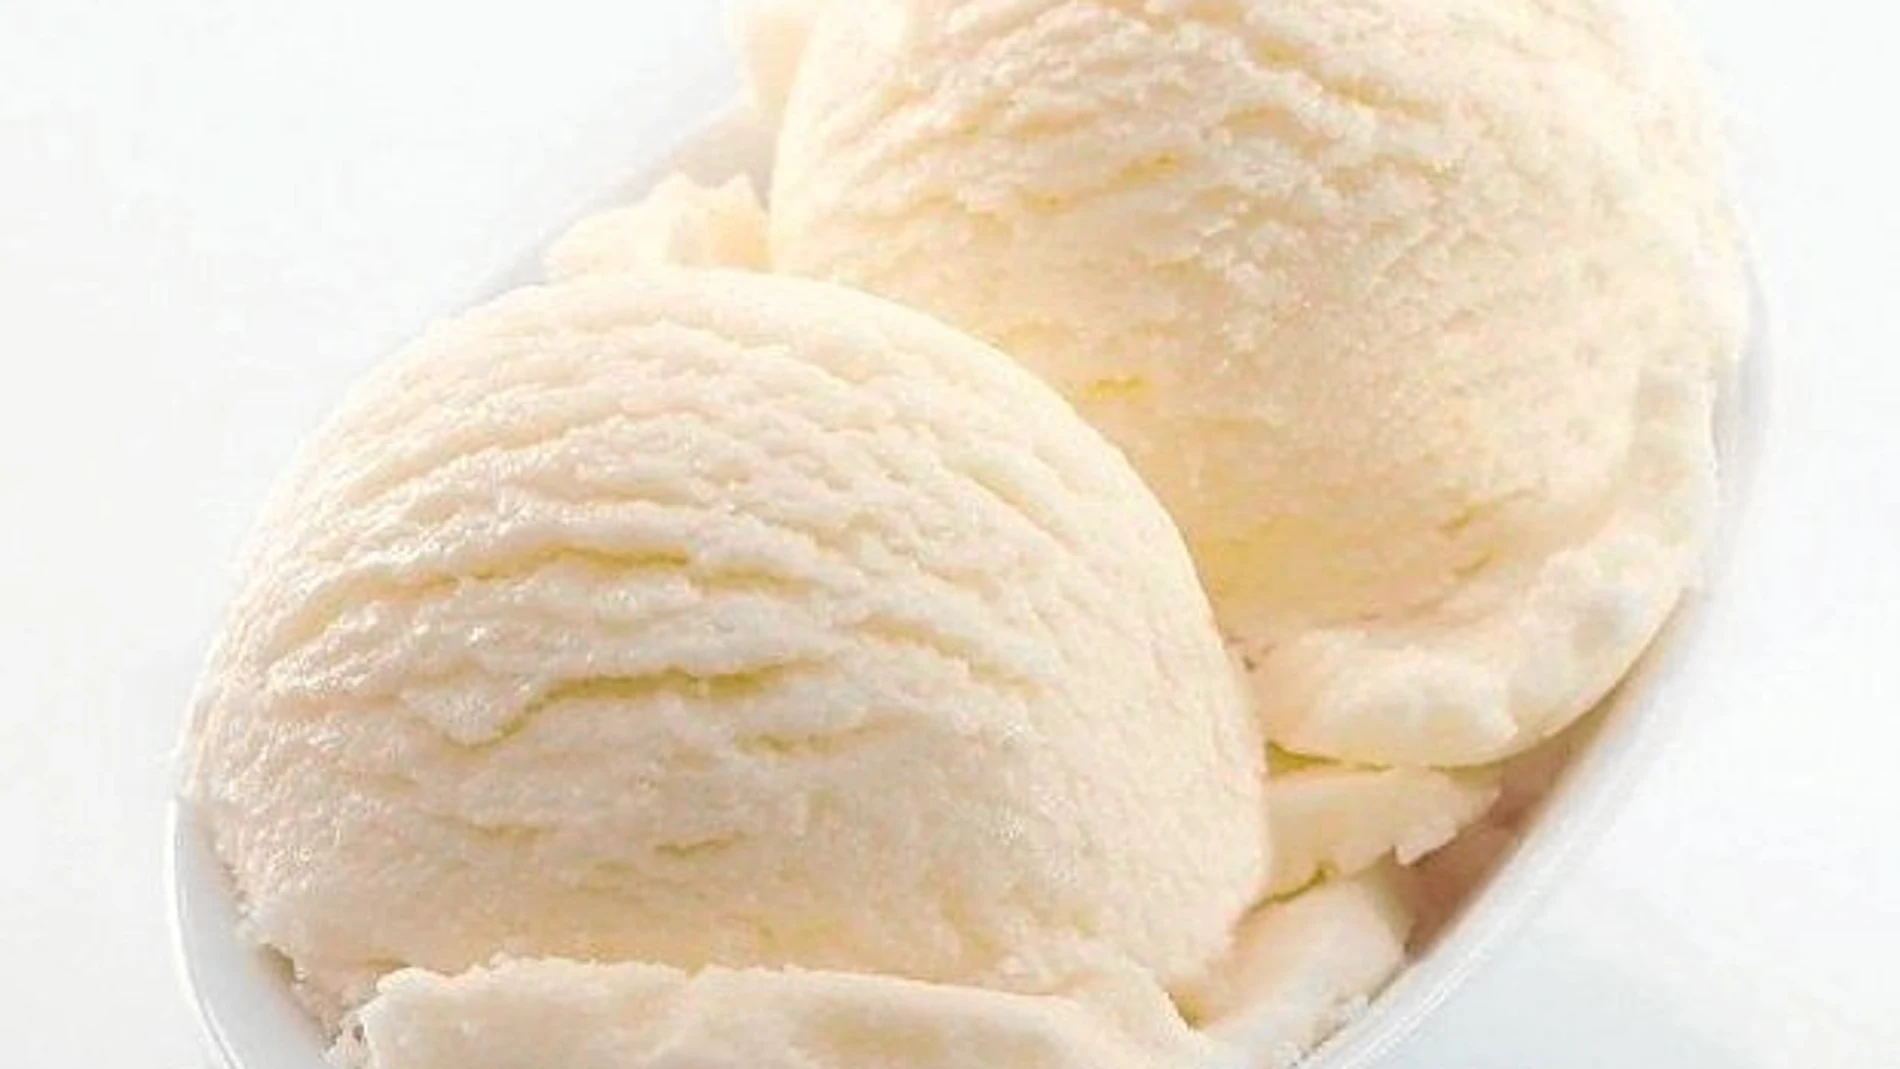 El calorímetro: Dos bolas de helado de vainilla